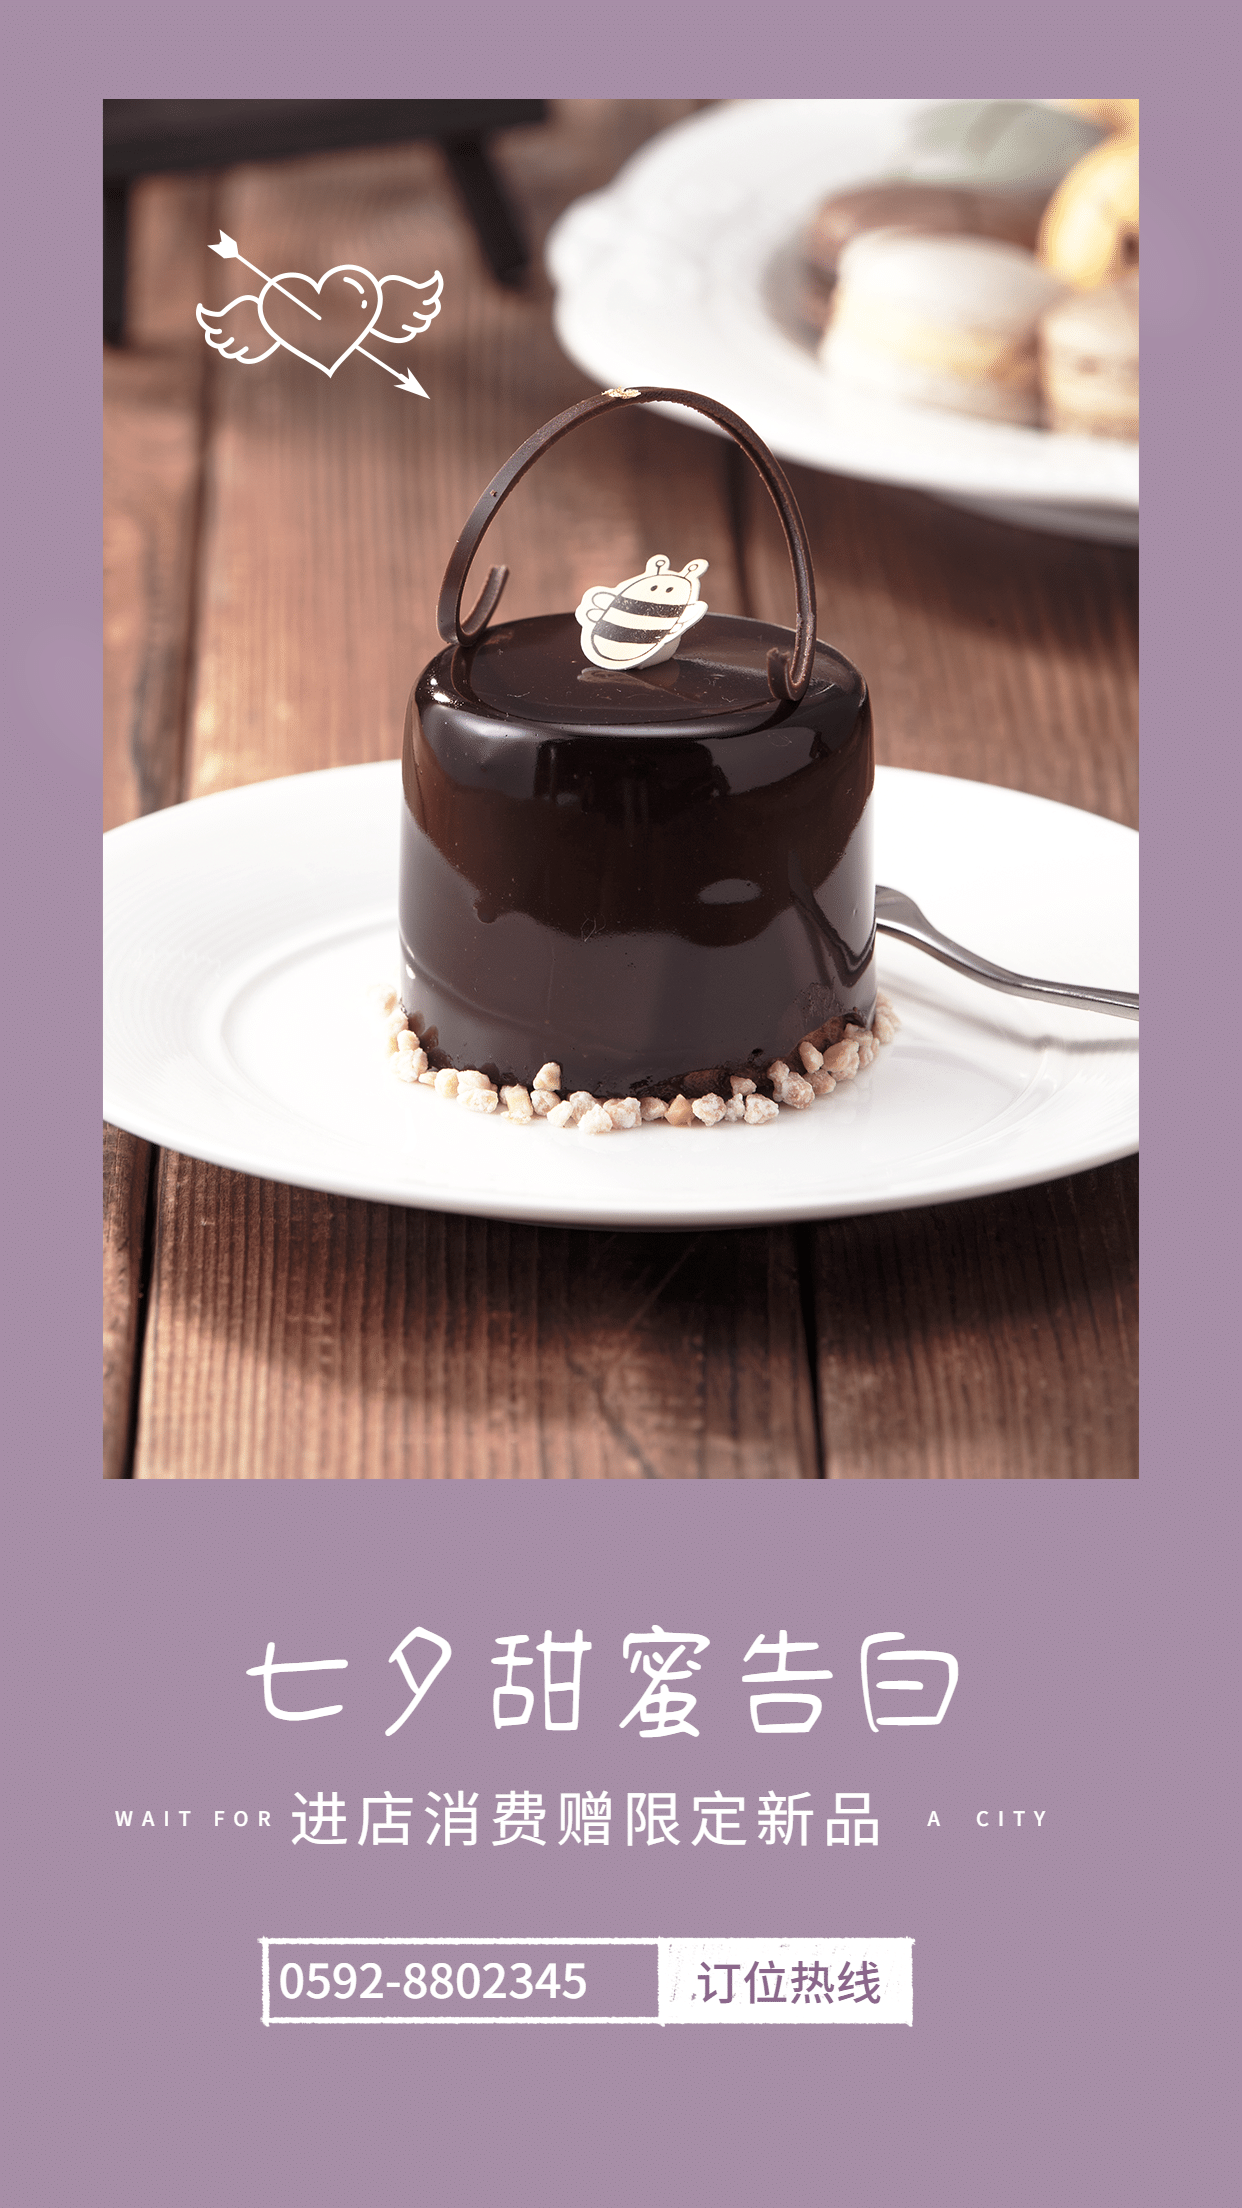 七夕情人节甜品店促销轻设计海报预览效果